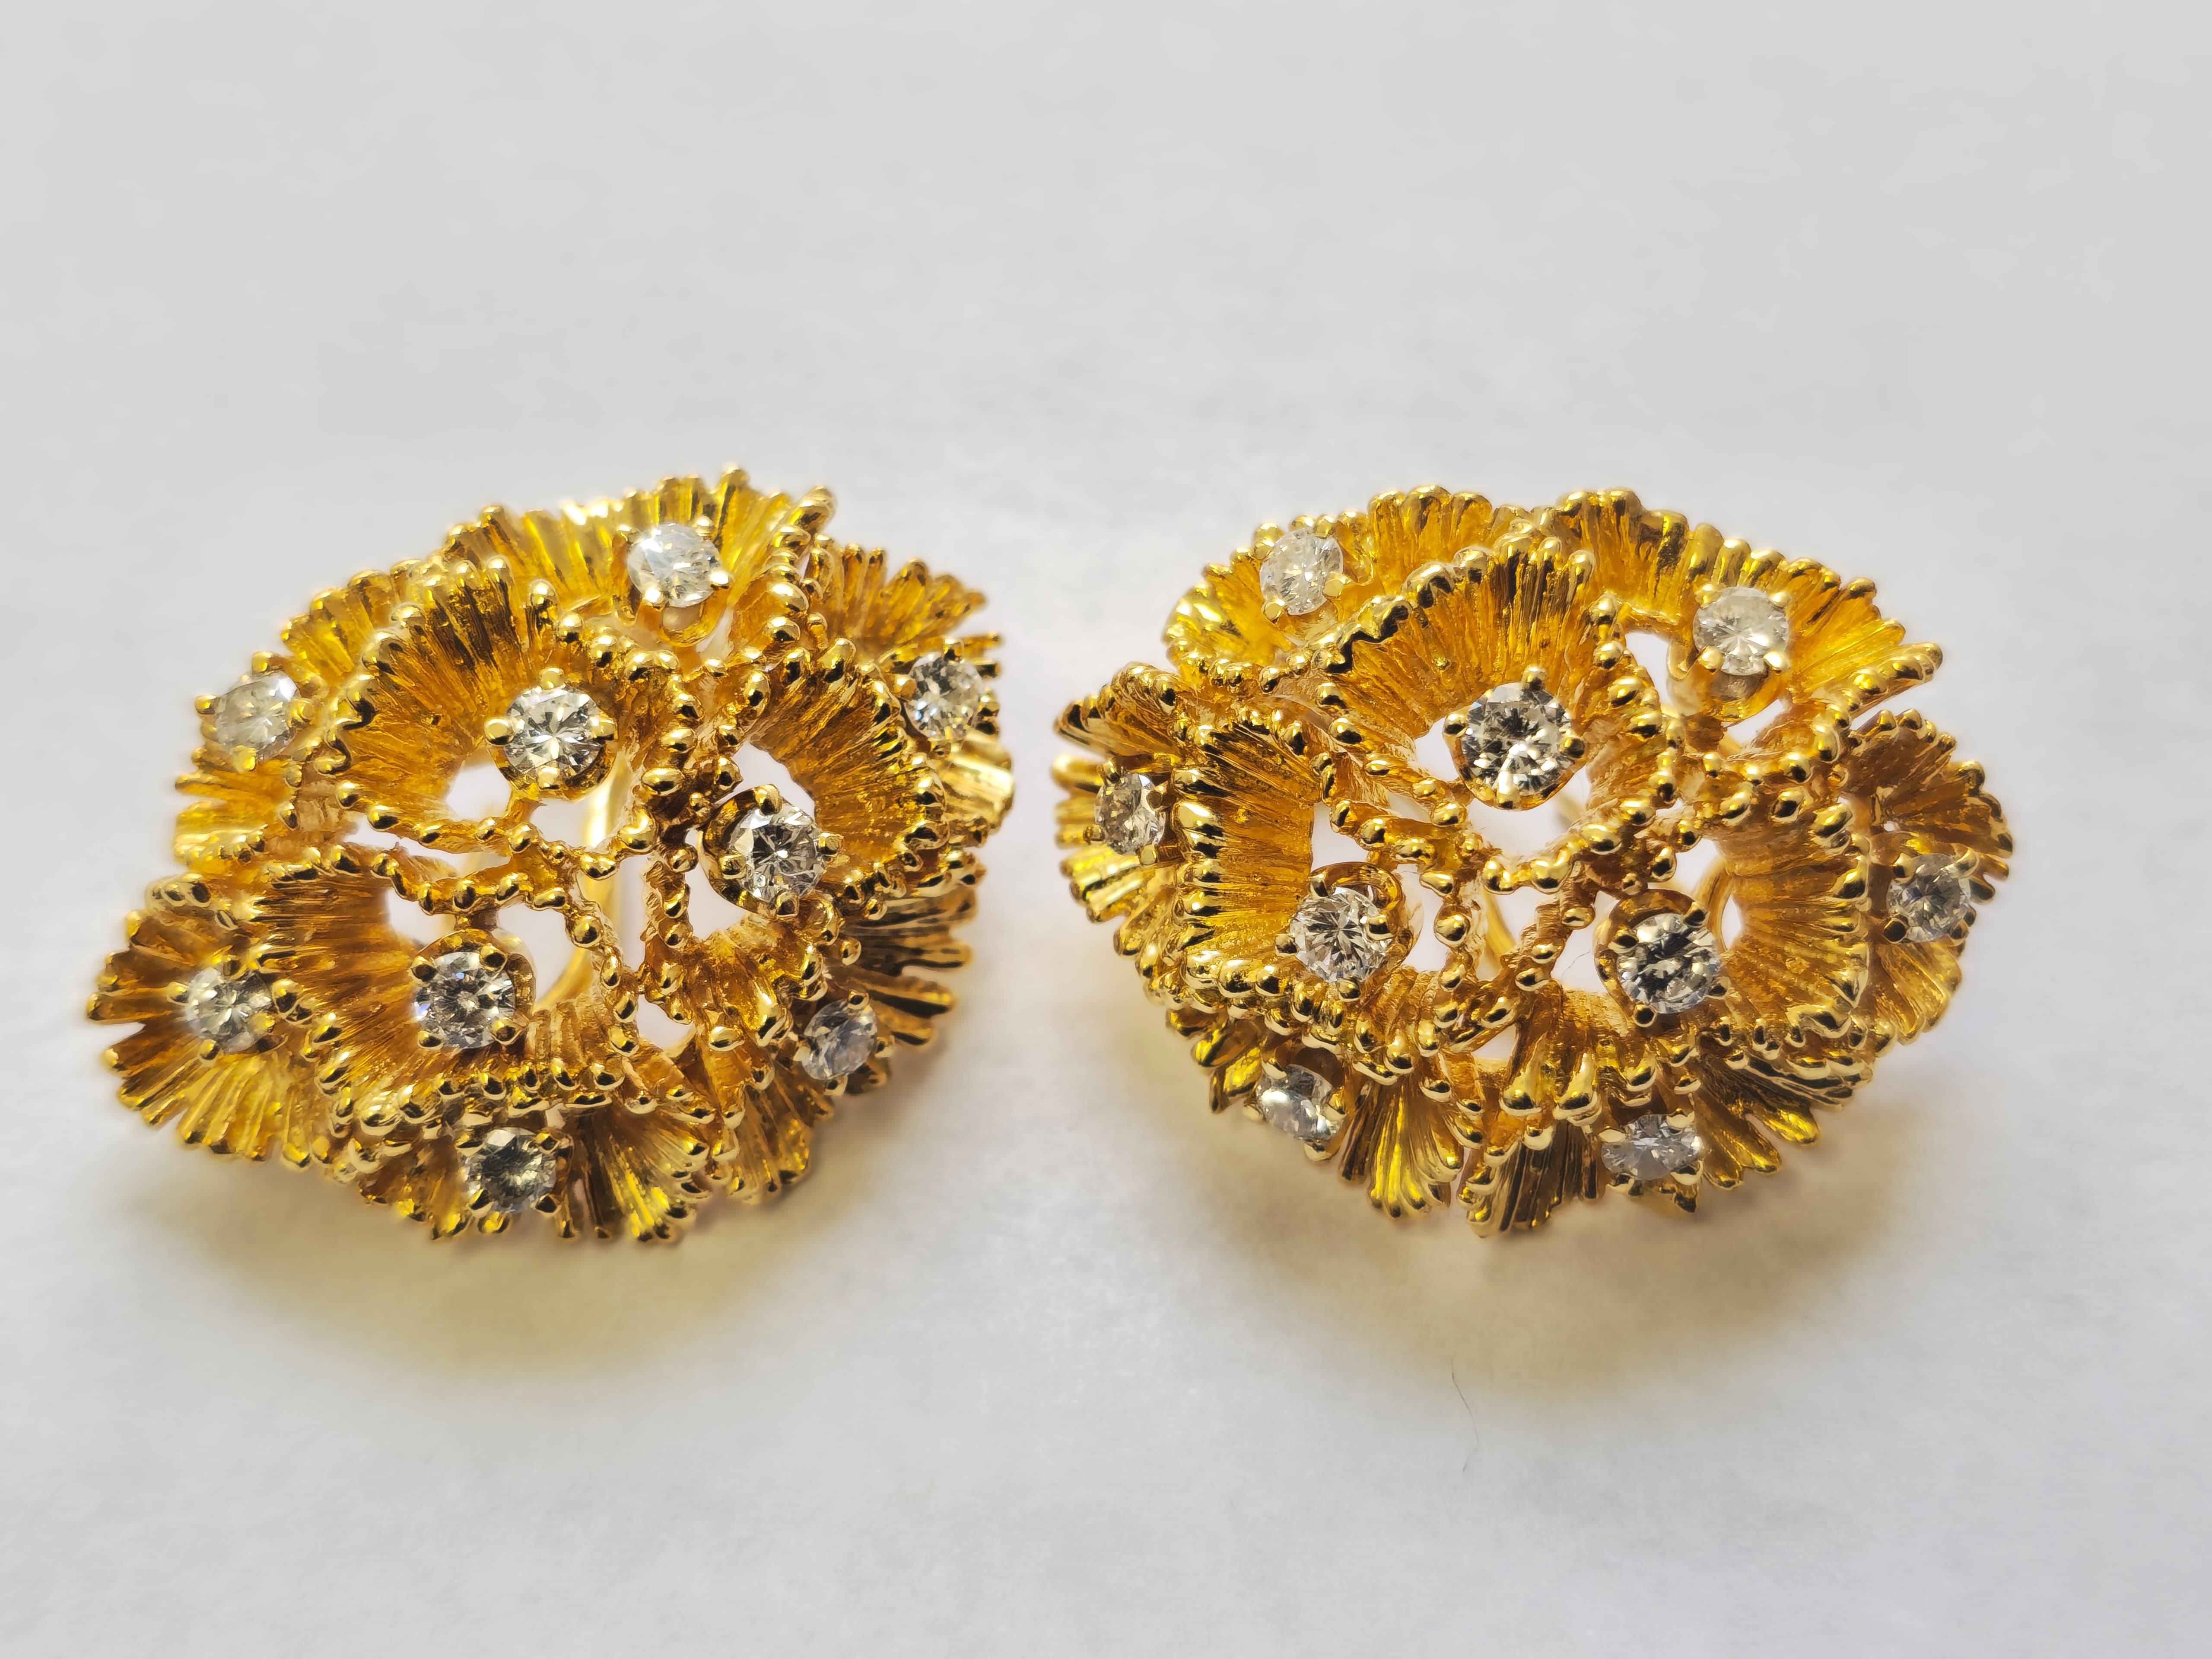 Women's 18k Gold Full Set: Ring, Earrings, Pendant/Pin For Sale